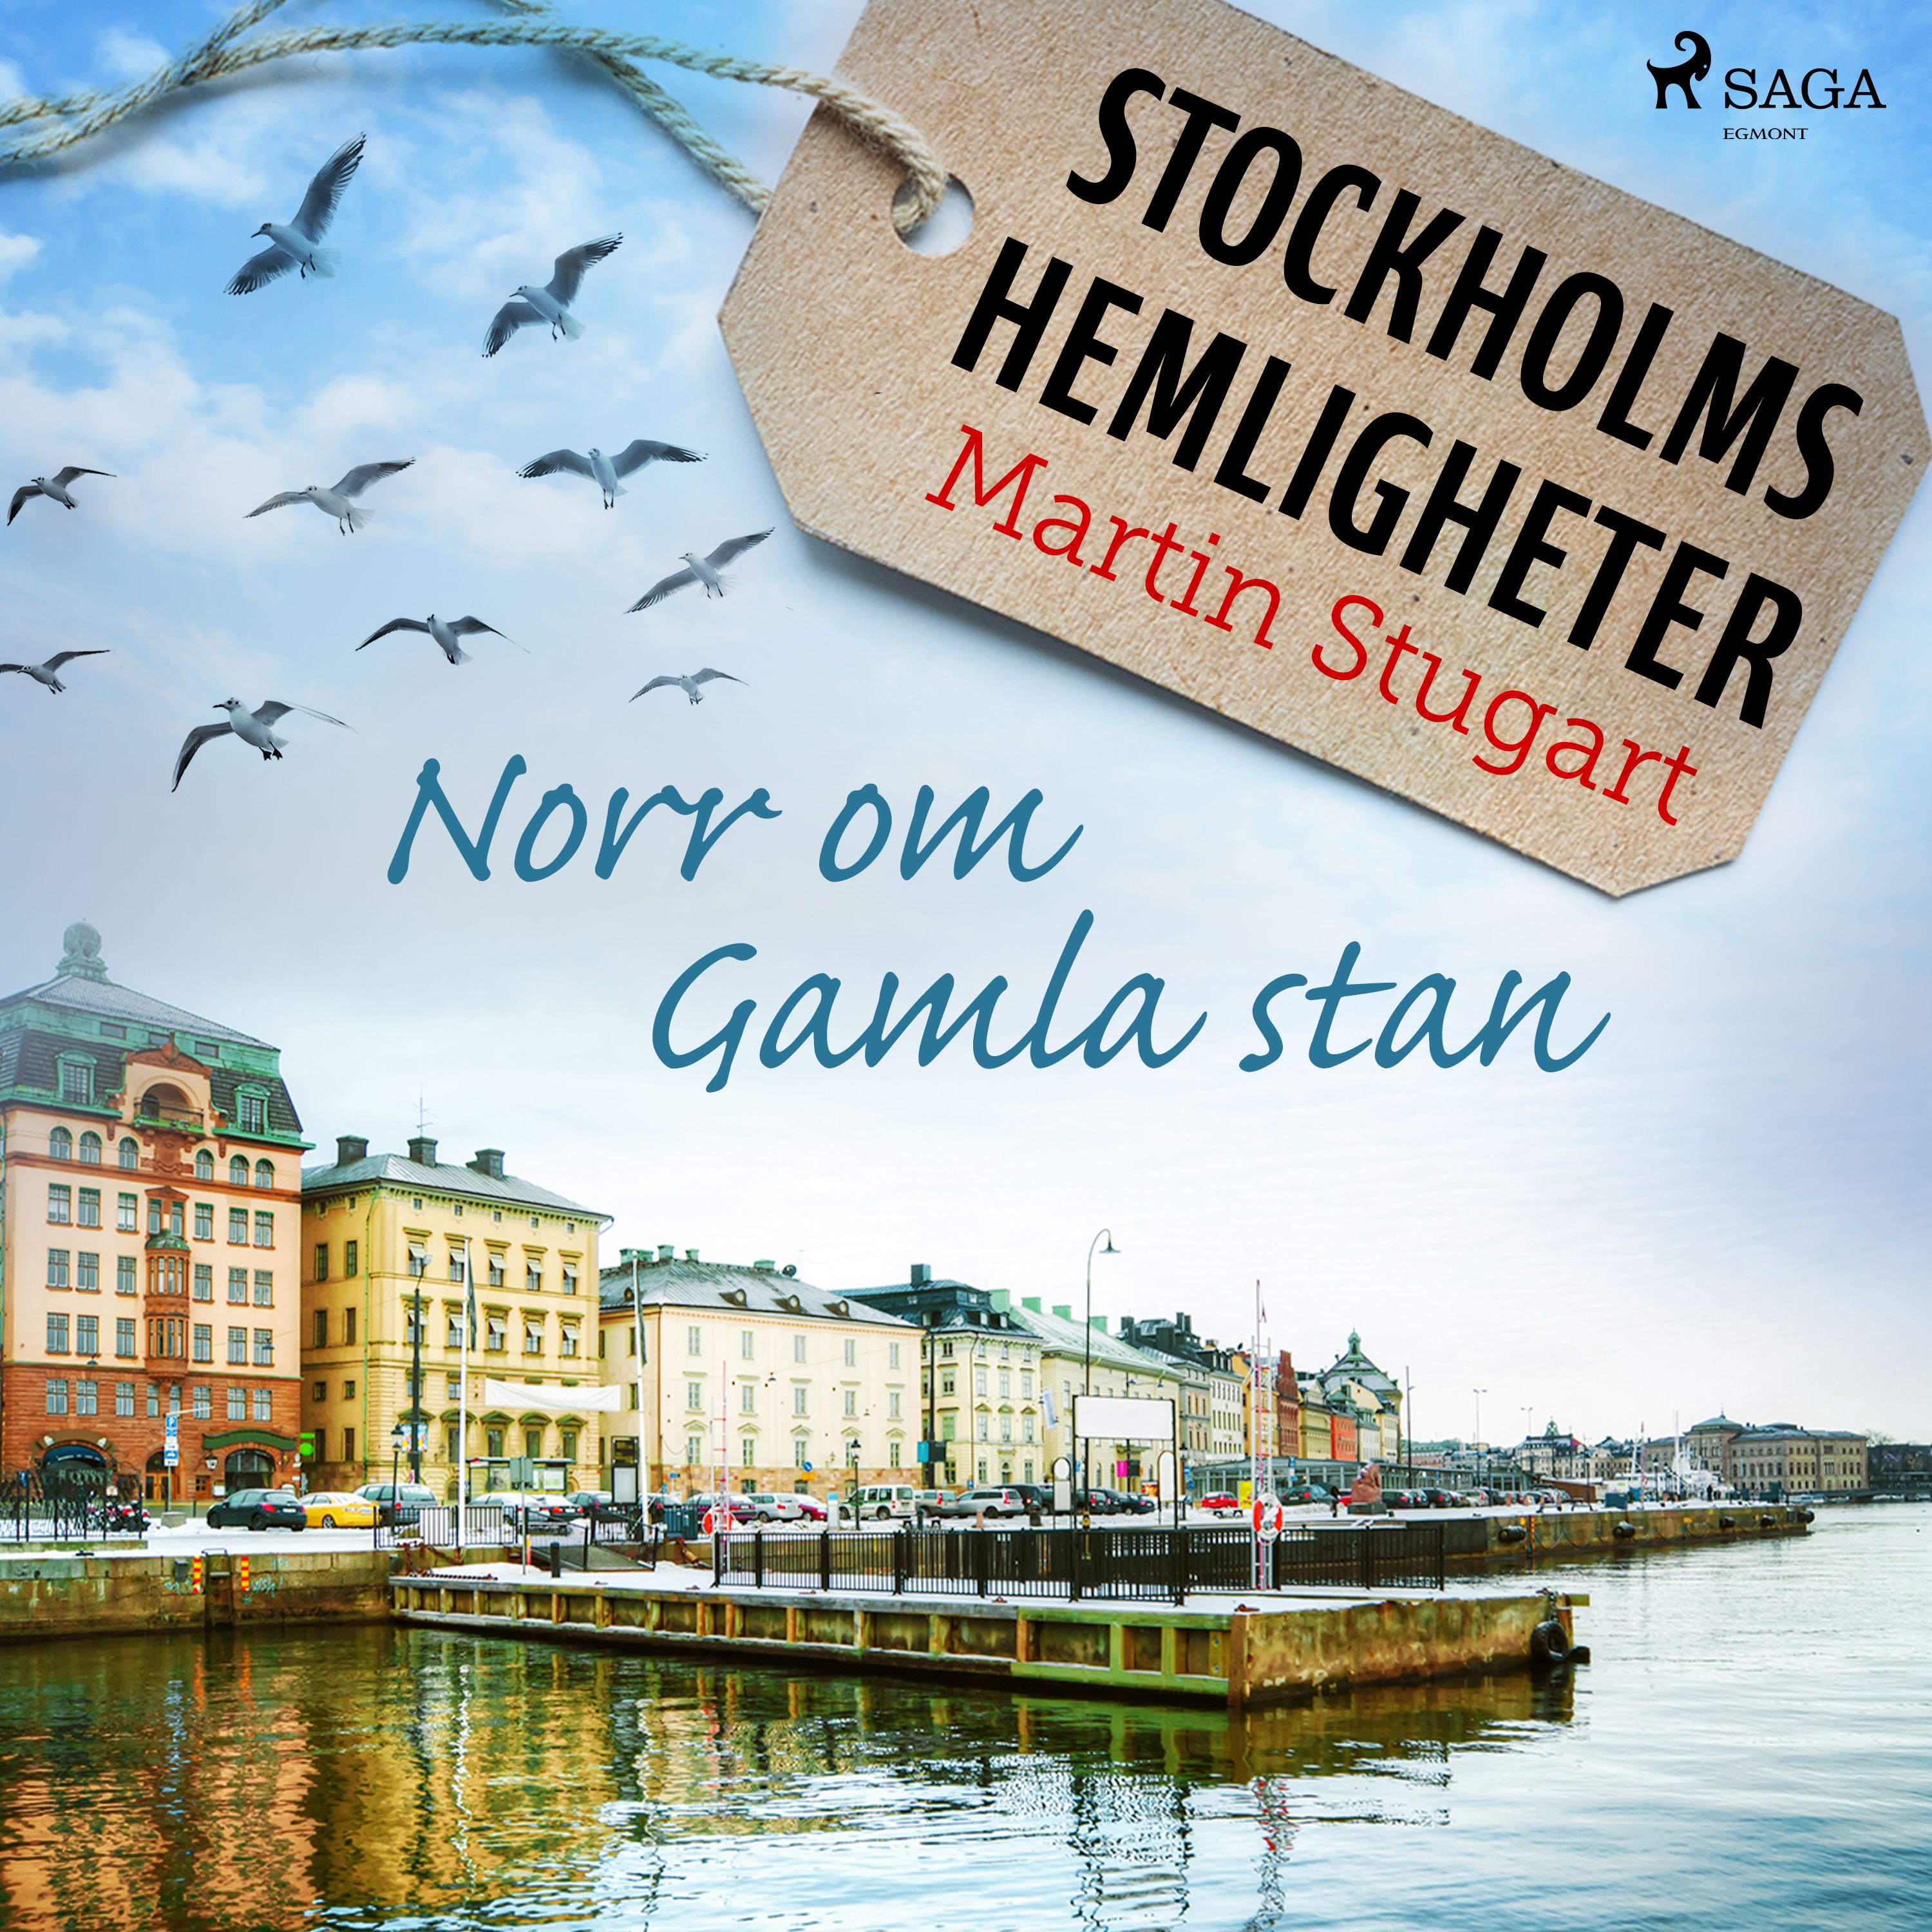 Stockholms hemligheter: Norr om Gamla stan, lydbog af Martin Stugart